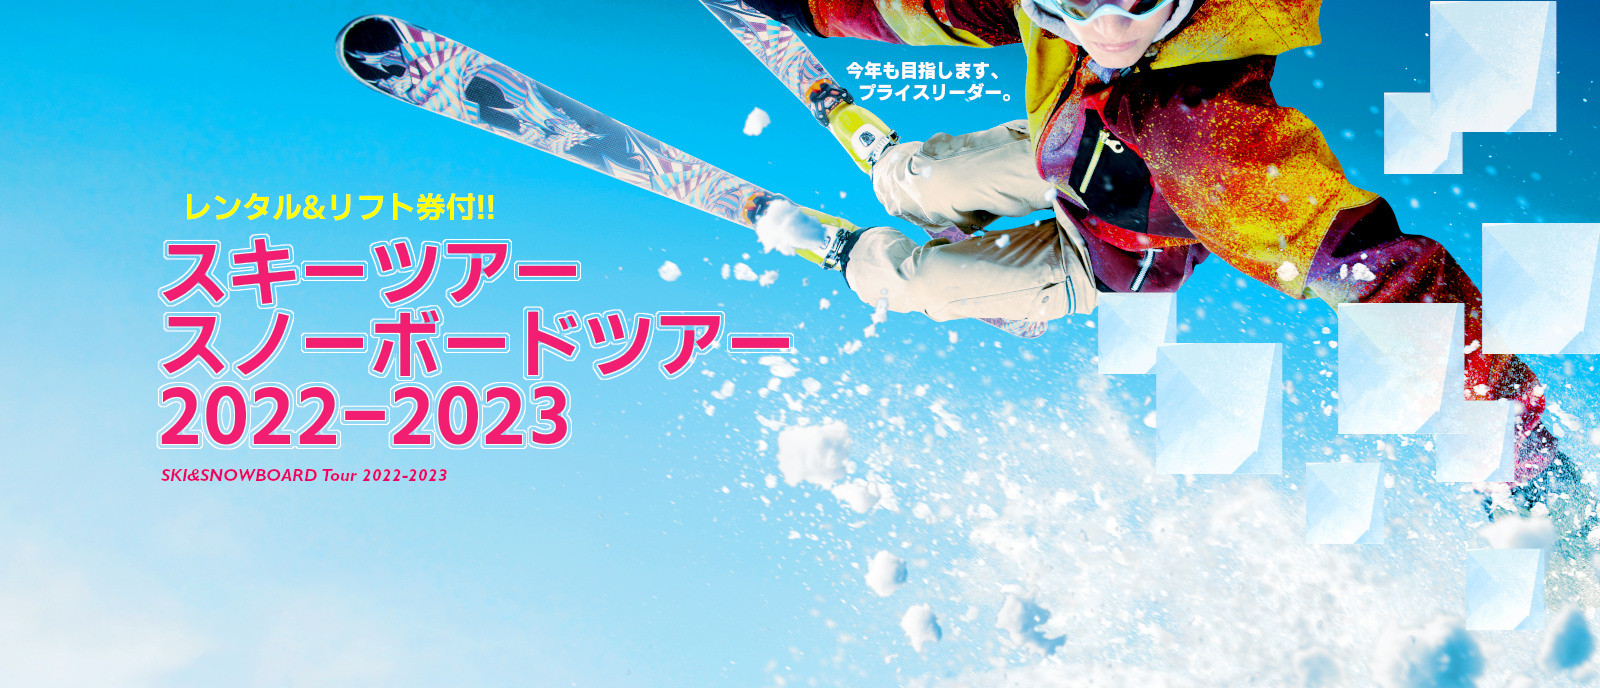 スキーツアースノーボードツアー2022-2023